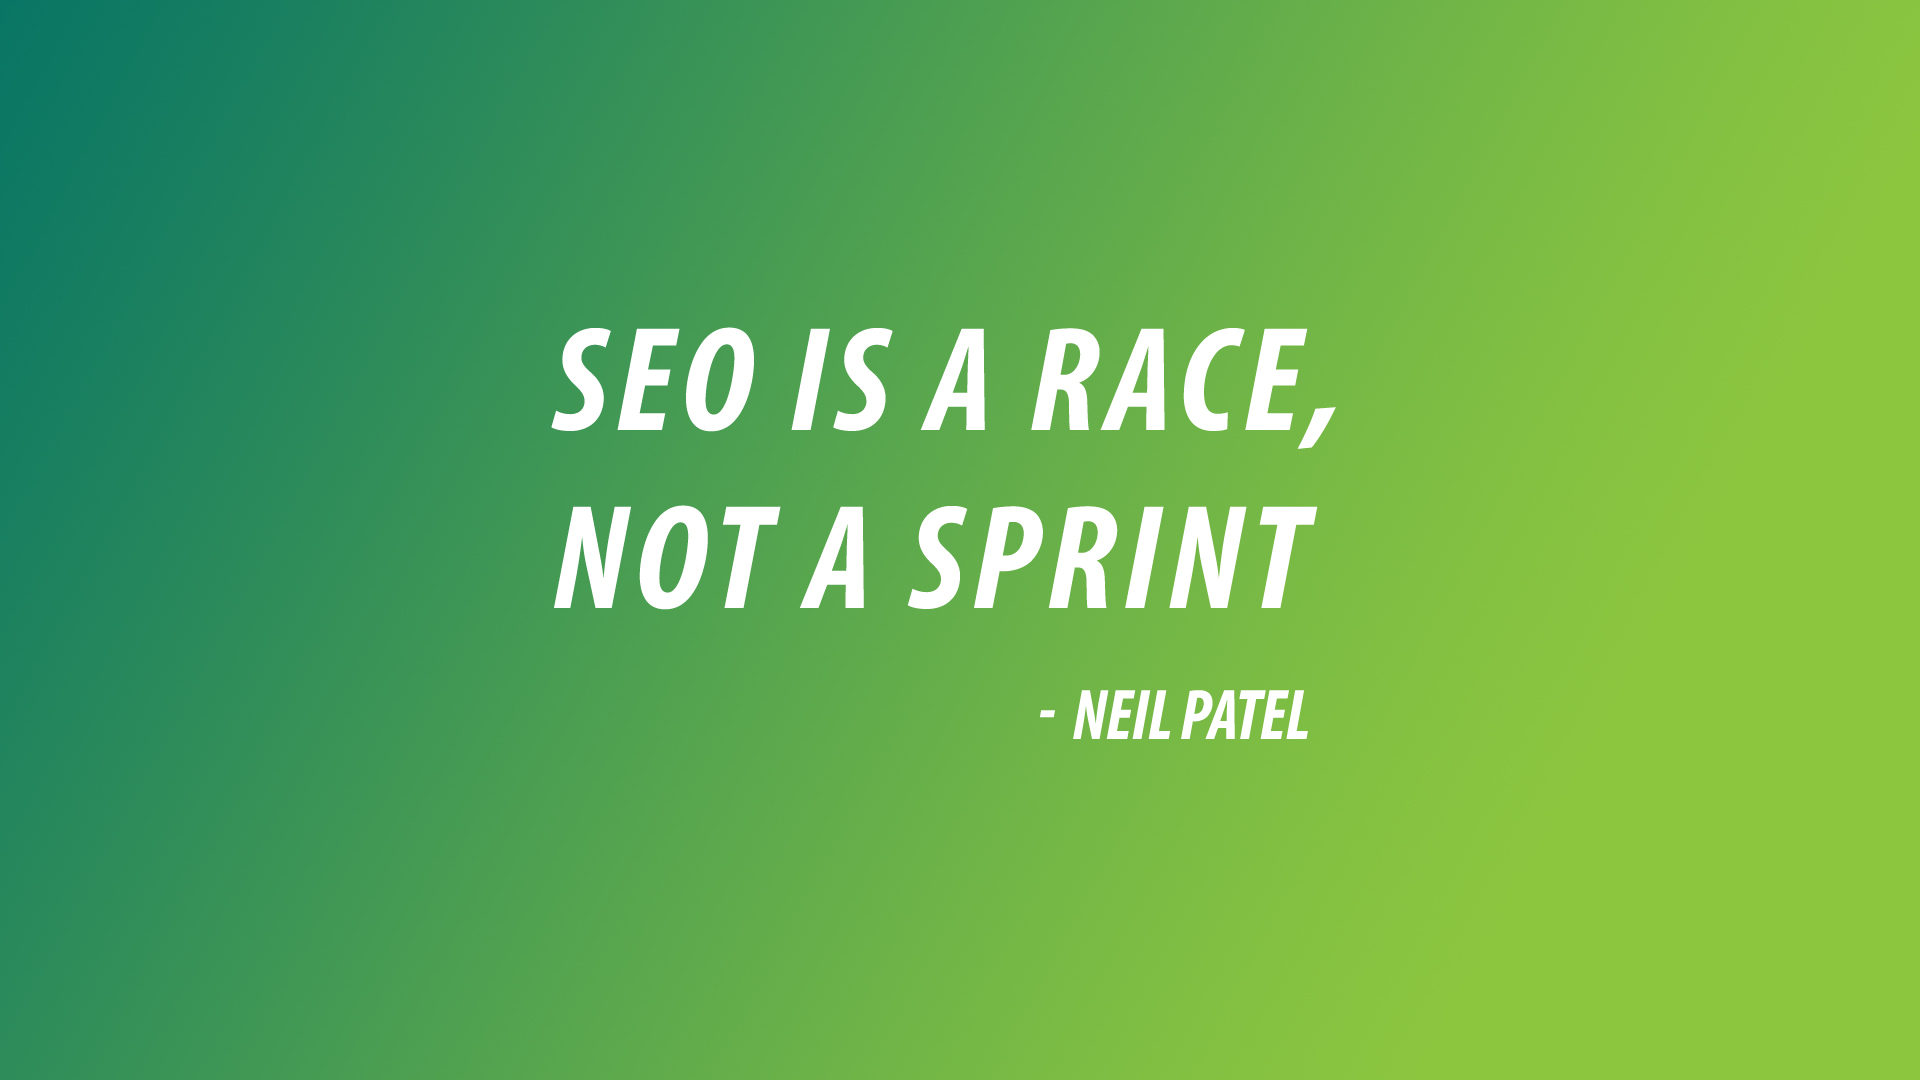 Neil Patel quote